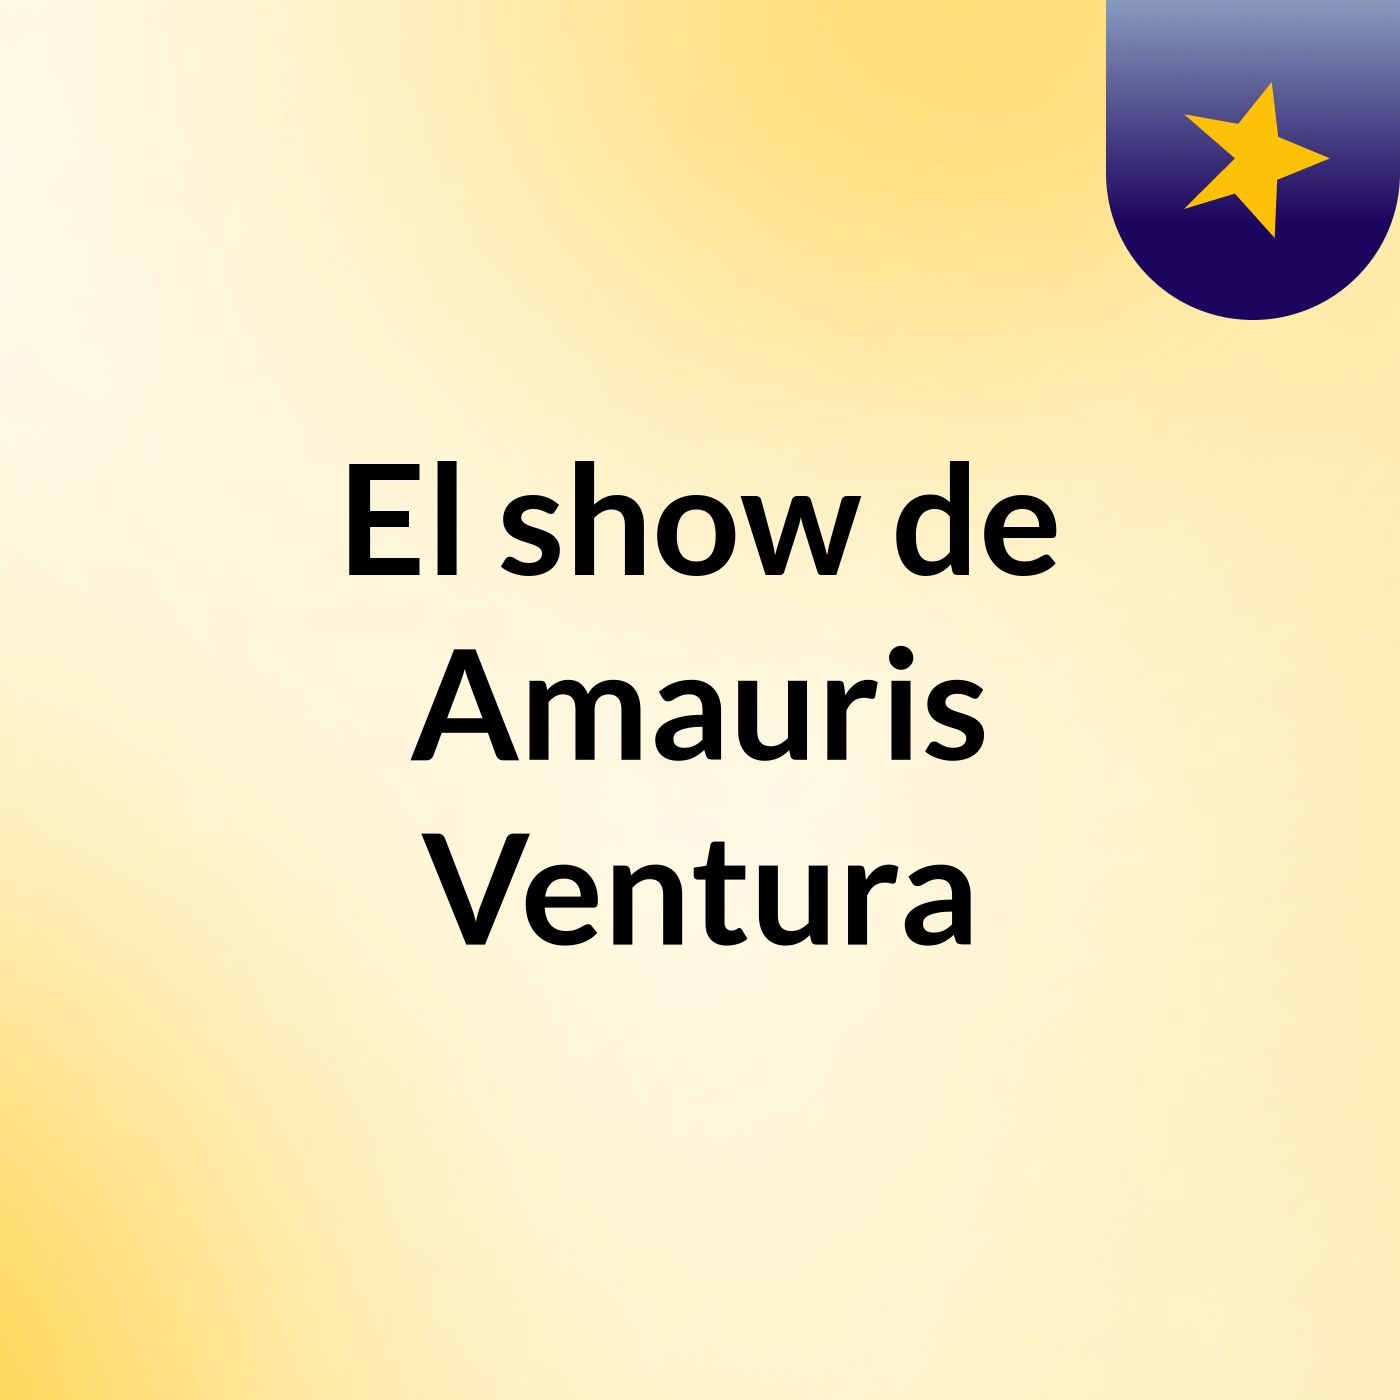 El show de Amauris Ventura